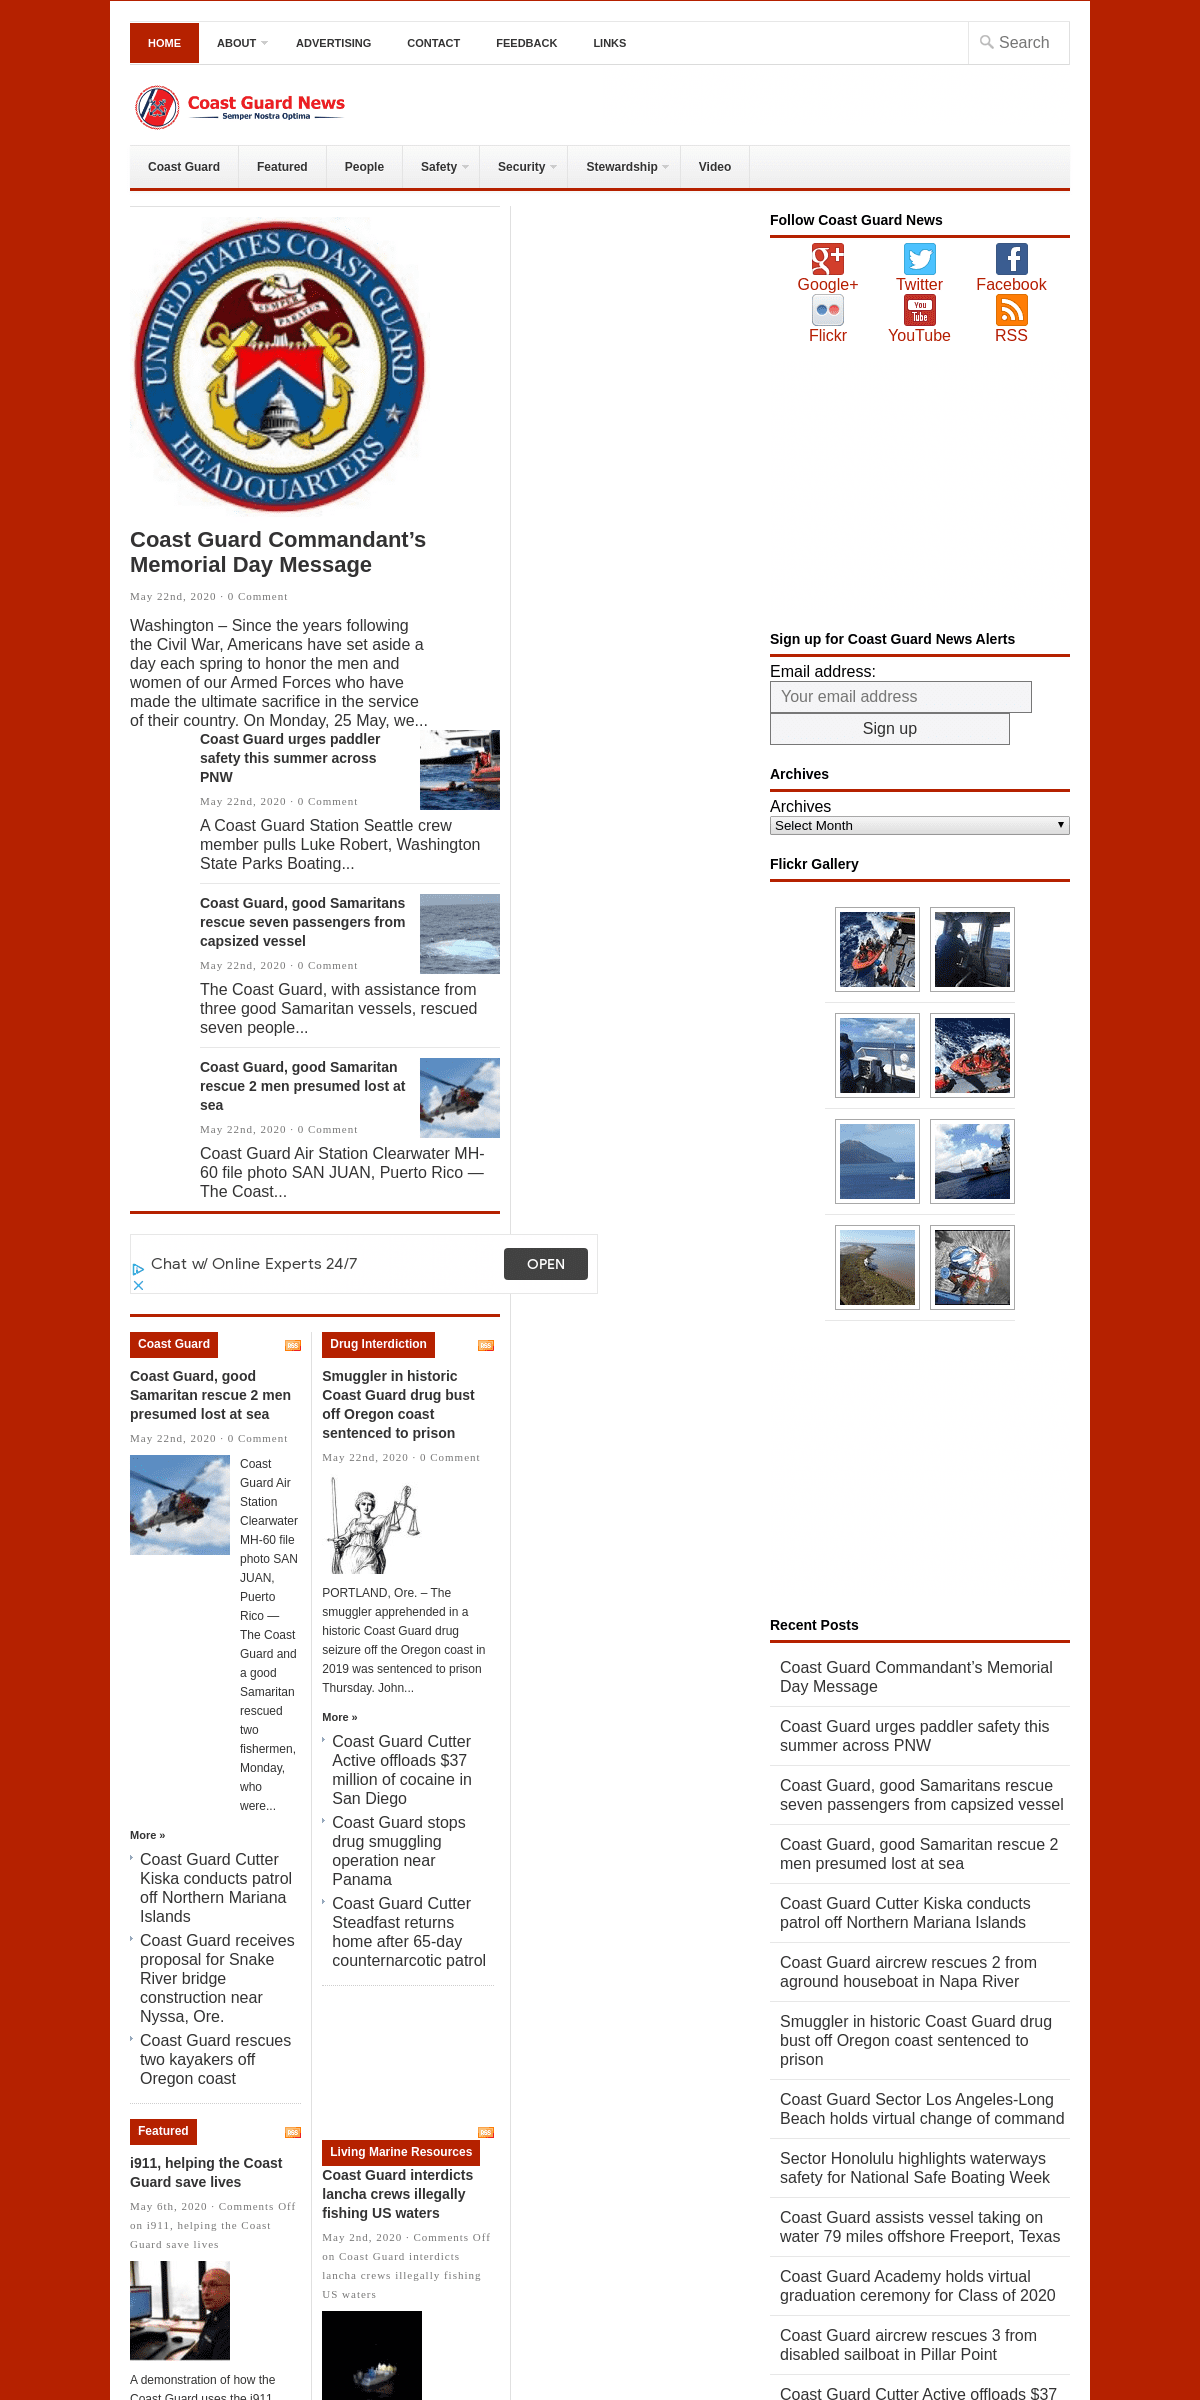 A complete backup of coastguardnews.com